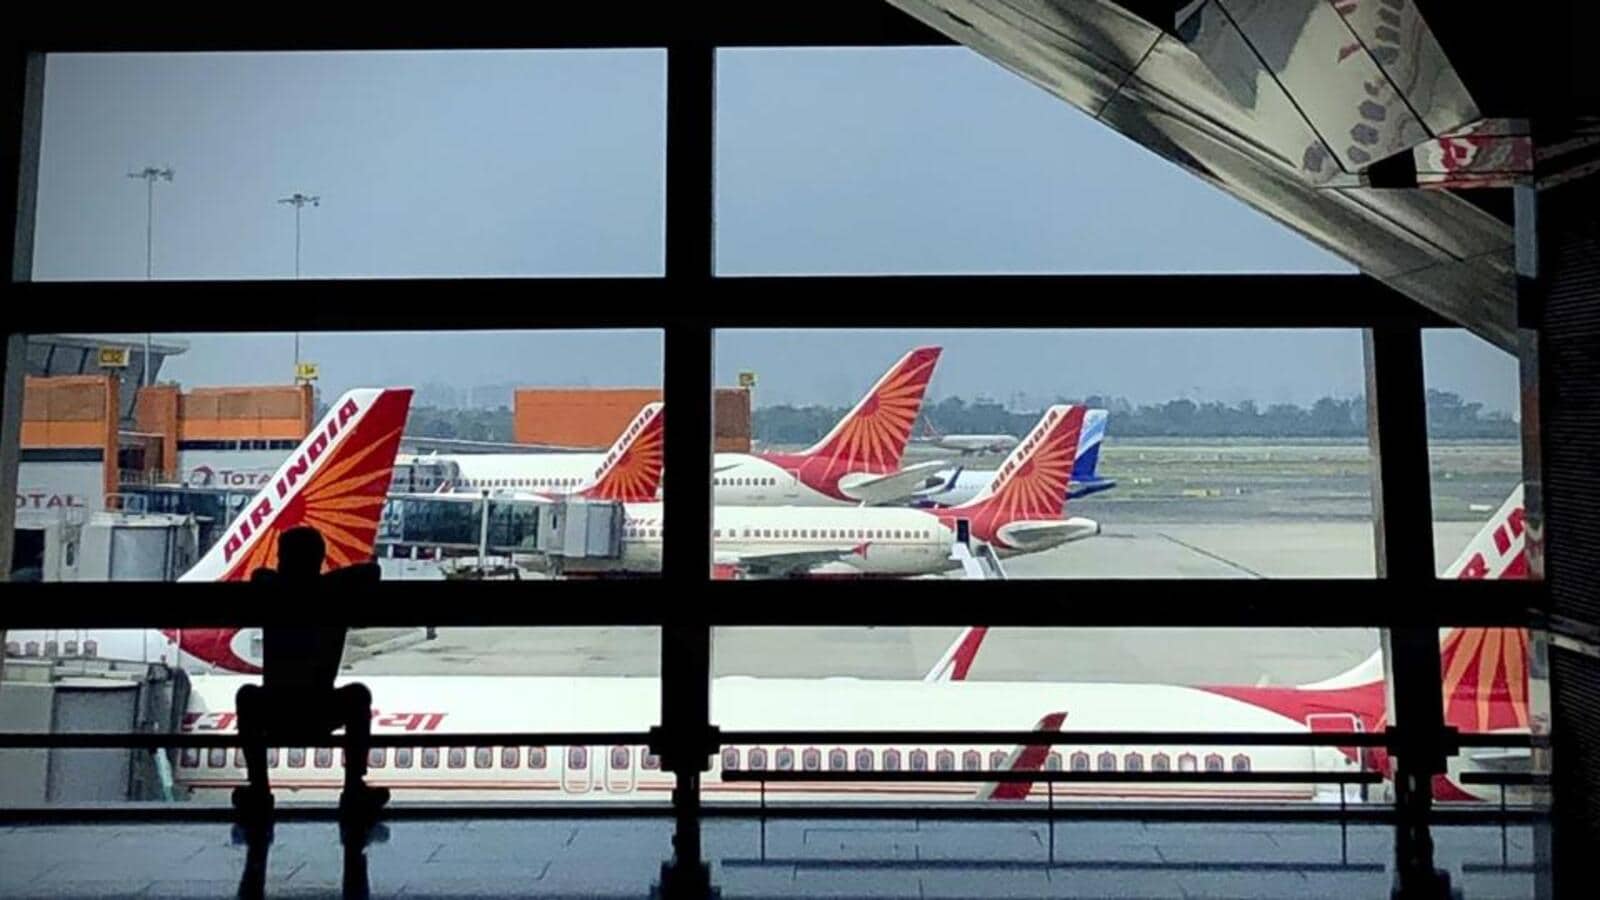 Hindi News: सात दशकों के बाद, टाटा समूह ने एयर इंडिया का स्वामित्व हासिल कर लिया